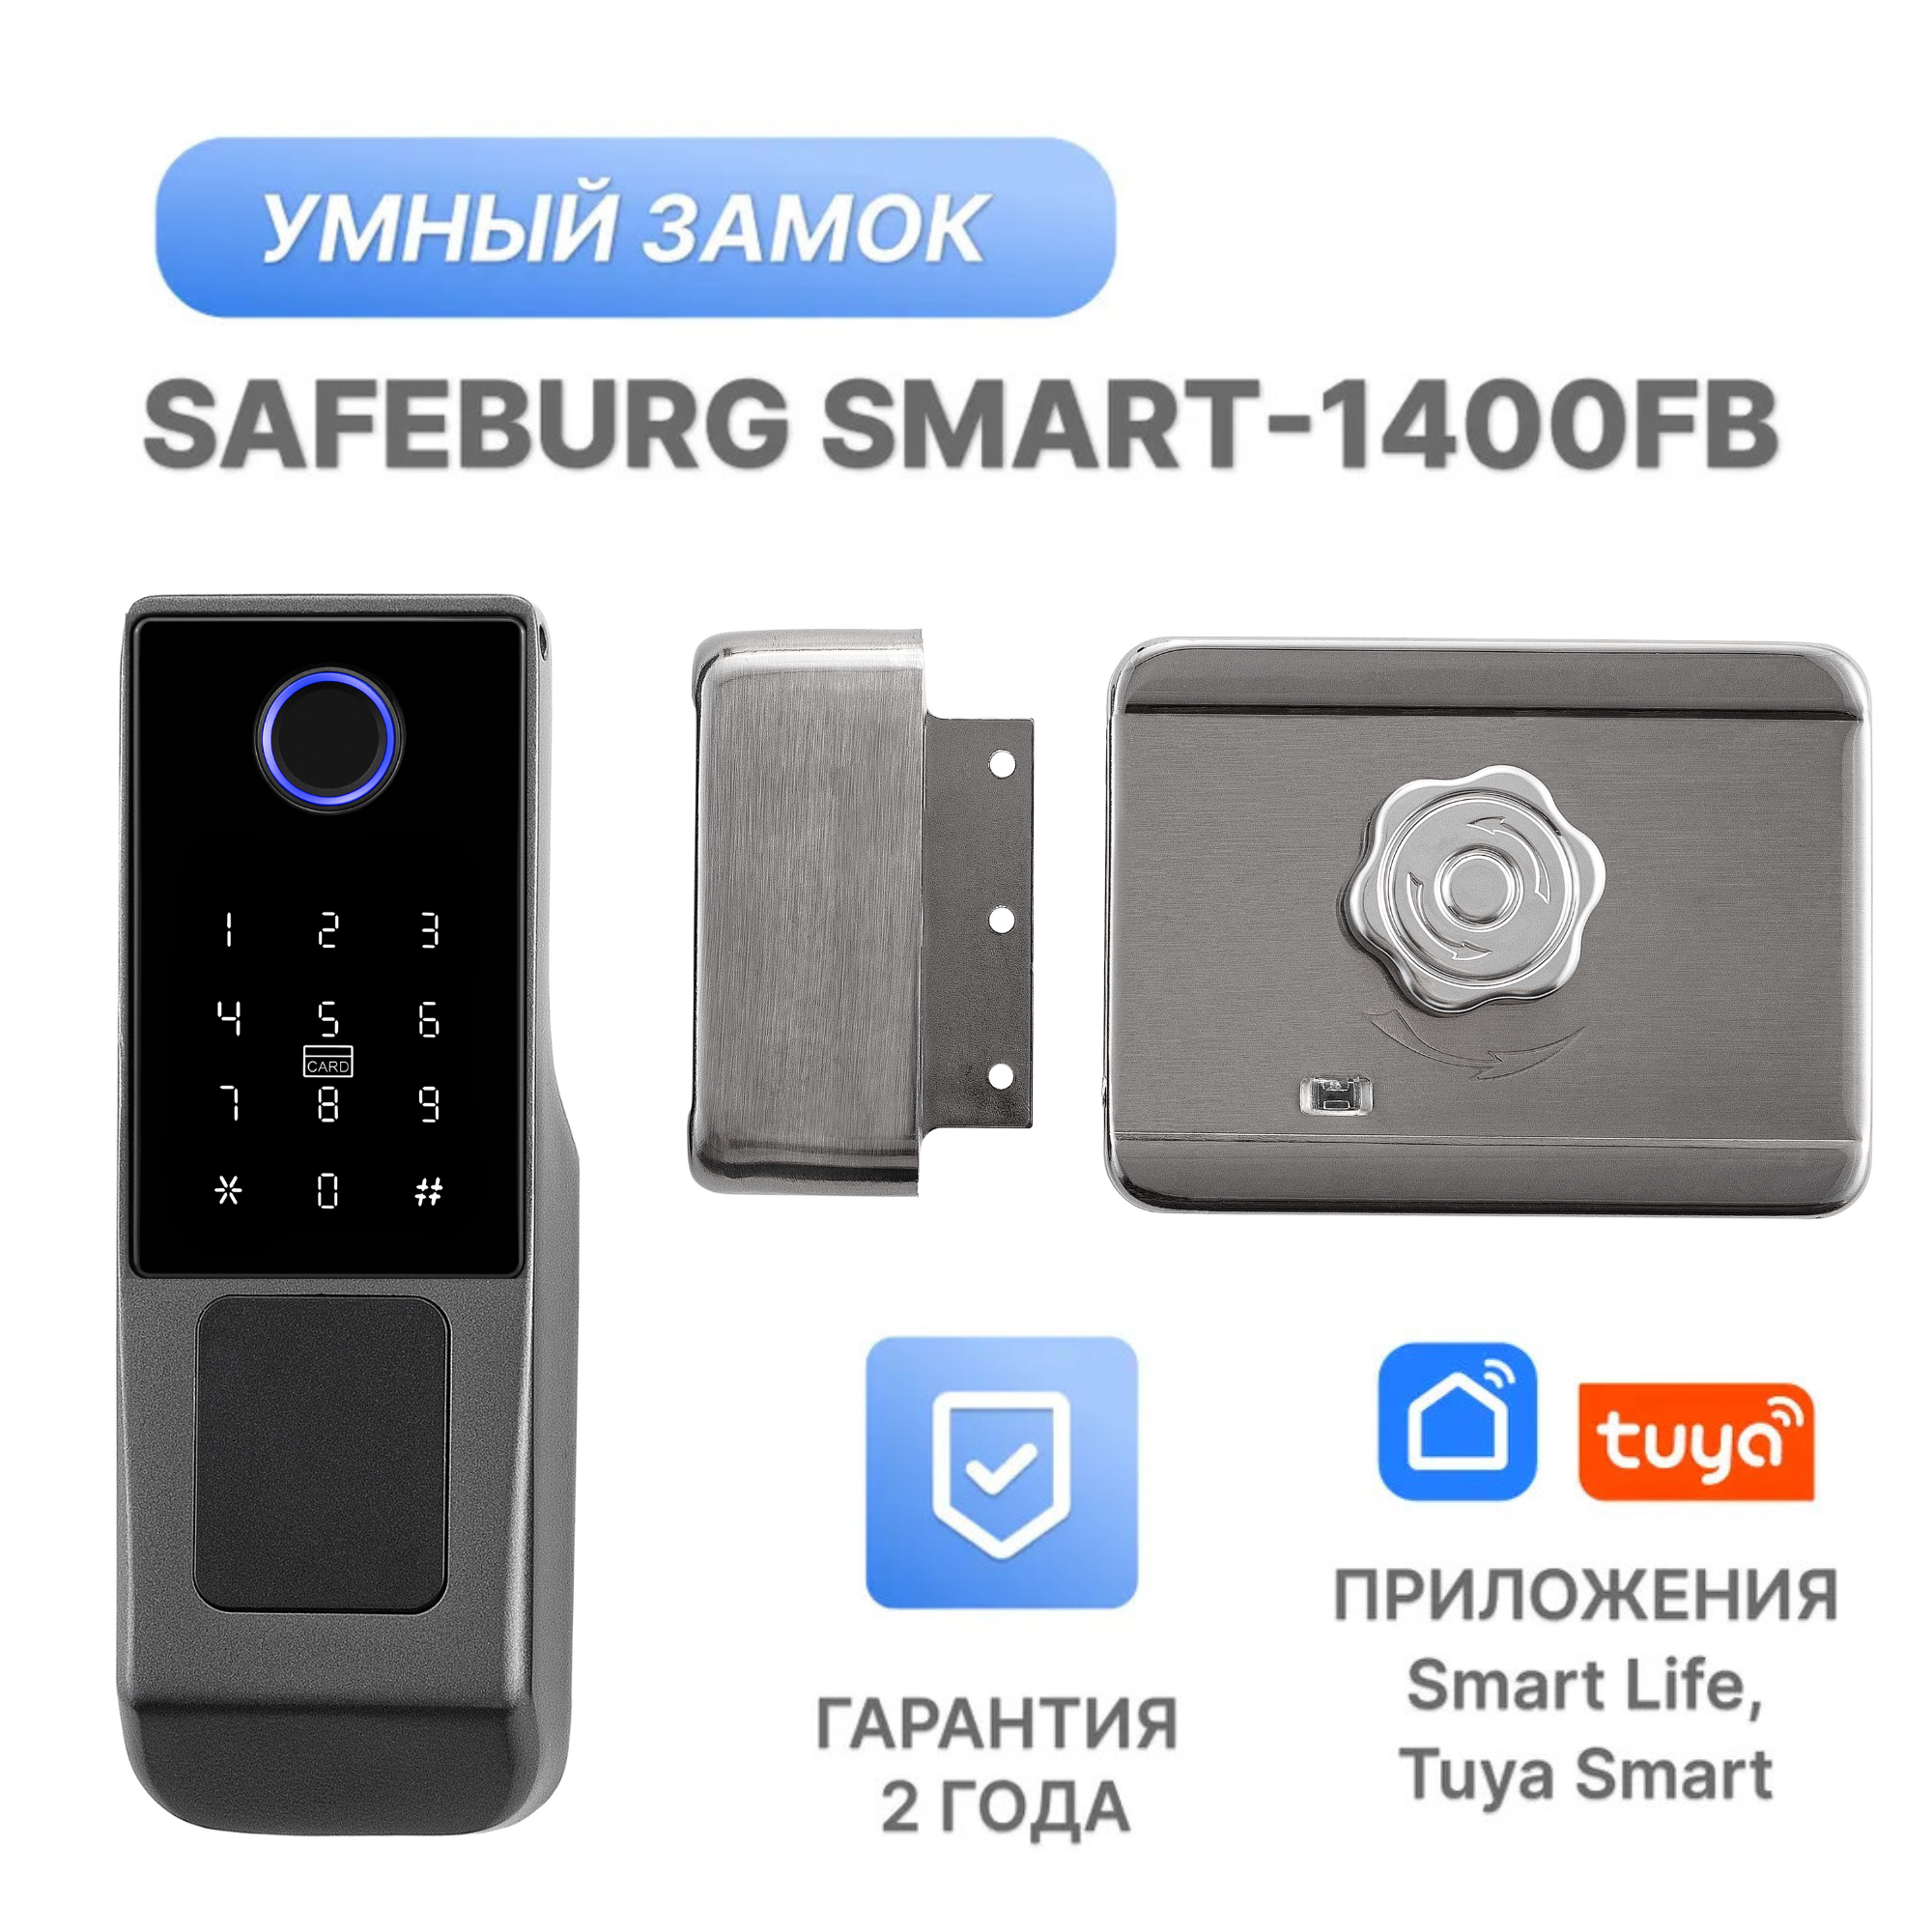 Умный электронный дверной замок с отпечатком пальца SAFEBURG SMART-1400FB 156x59x25 мм умный замок safeburg smart h3 электронный замок со сканером отпечатка пальца